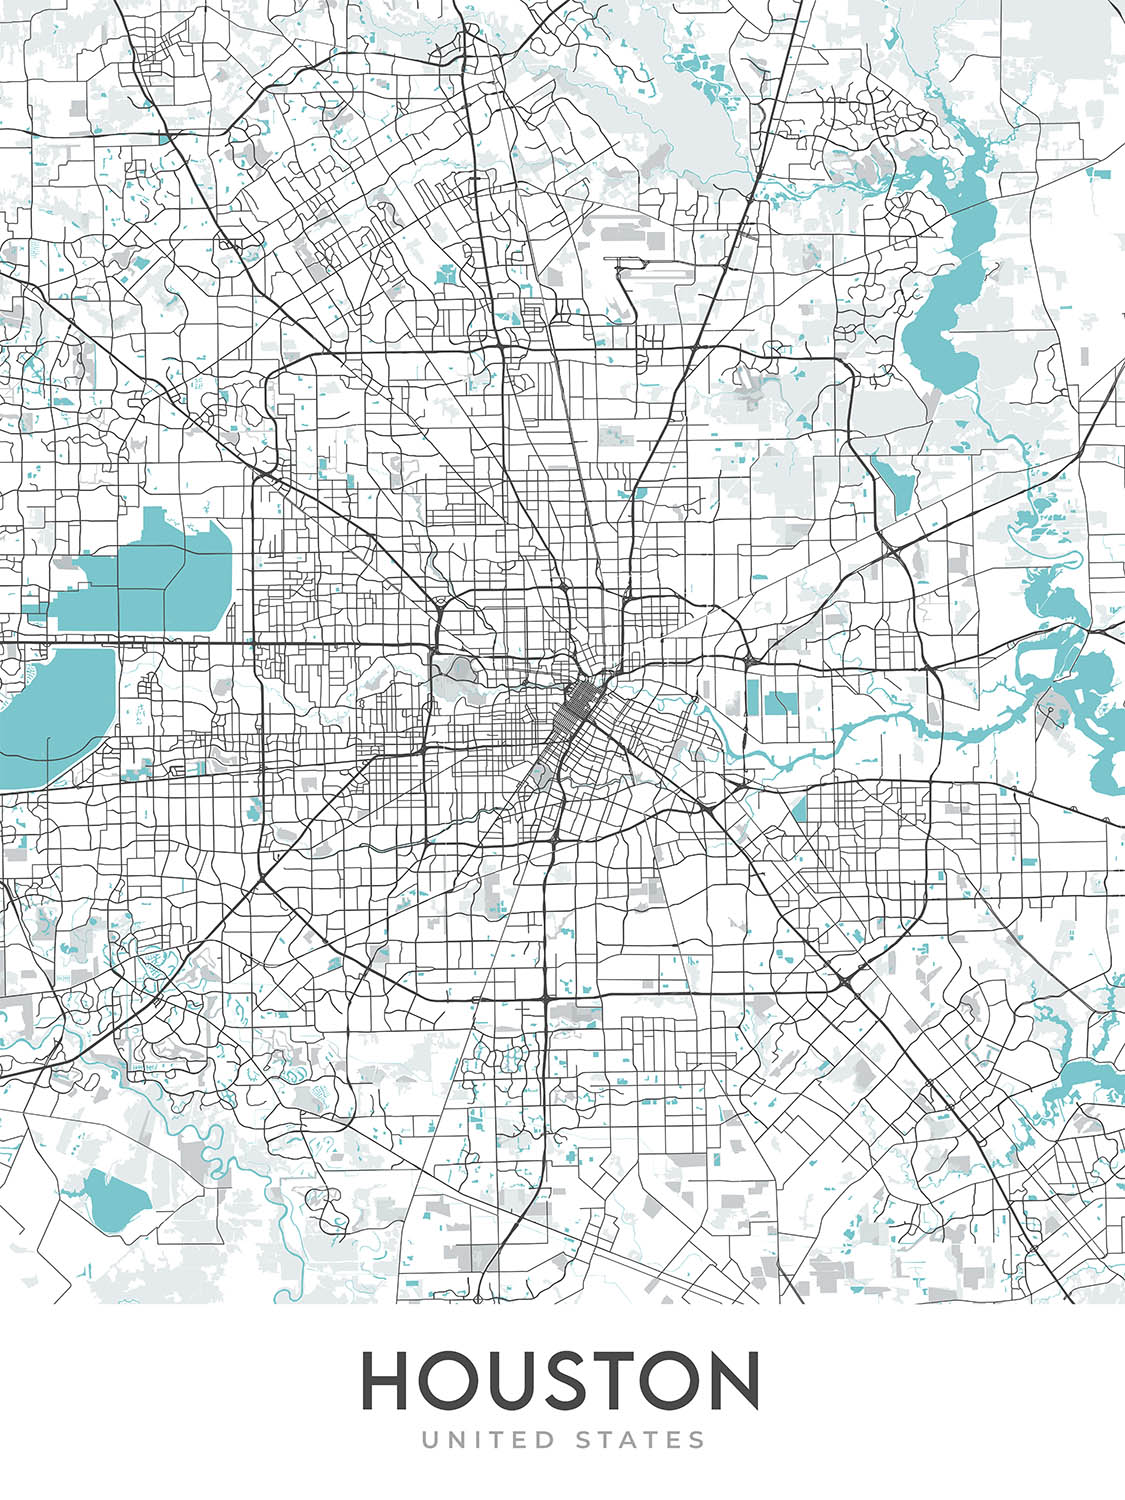 Moderner Stadtplan von Houston, TX: Innenstadt, Minute Maid Park, The Galleria, I-10, I-45